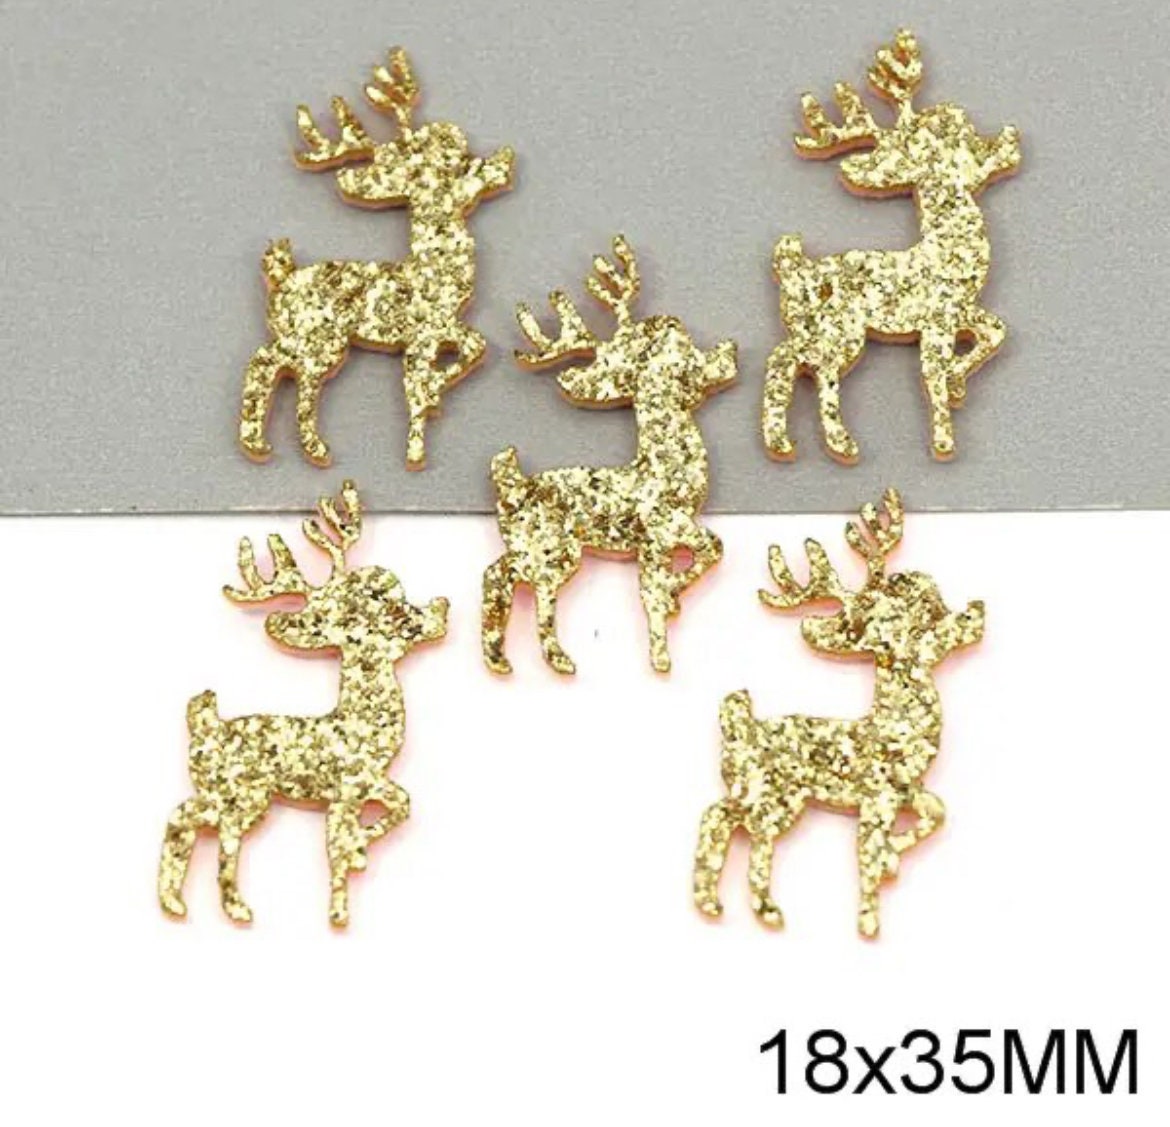 Felt reindeer shapes, 35mm gold